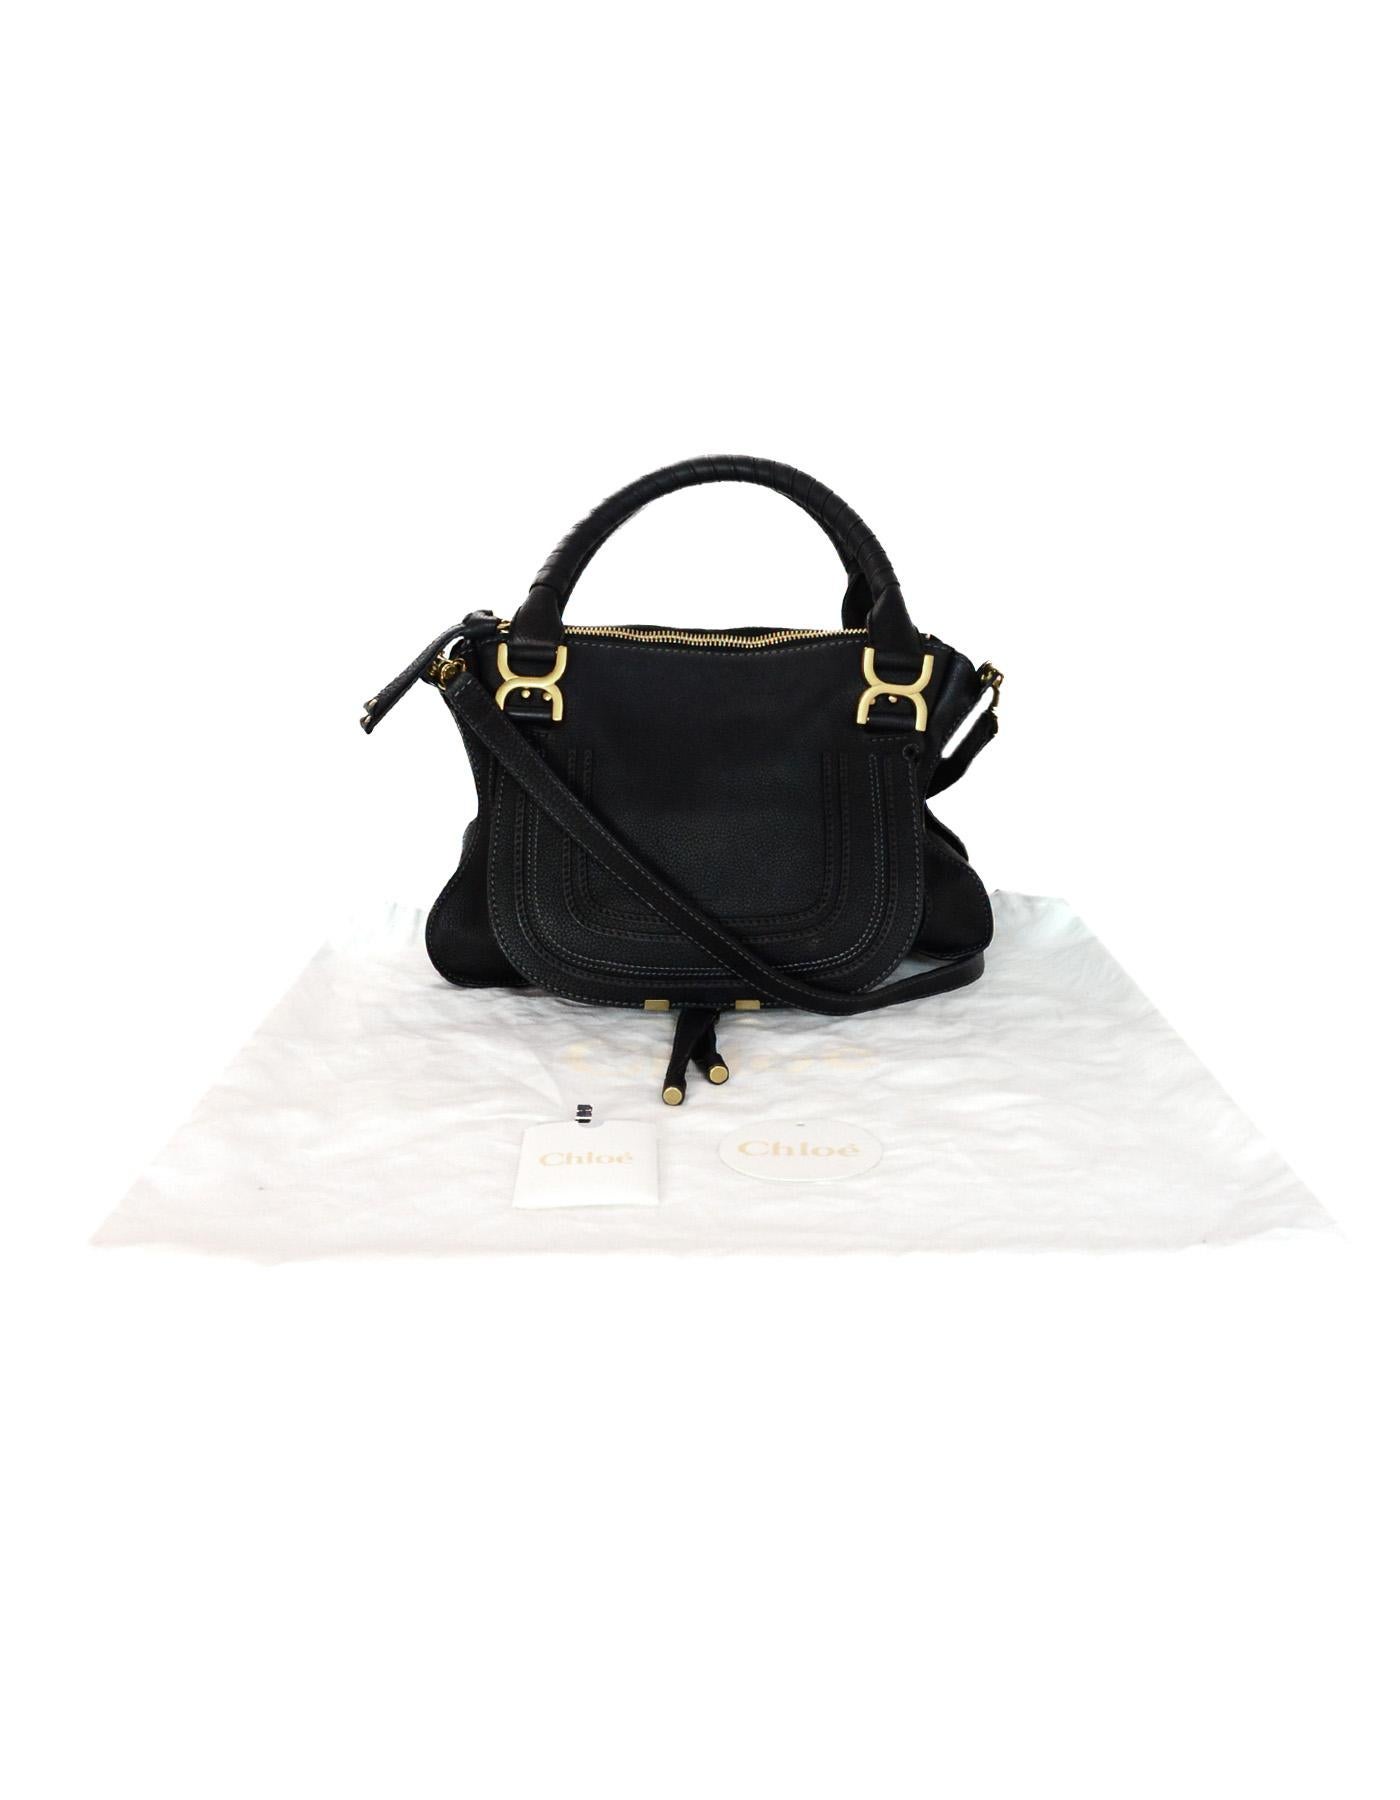 Chloe Black Leather Medium Marcie Satchel Bag W/ Crossbody Strap 2